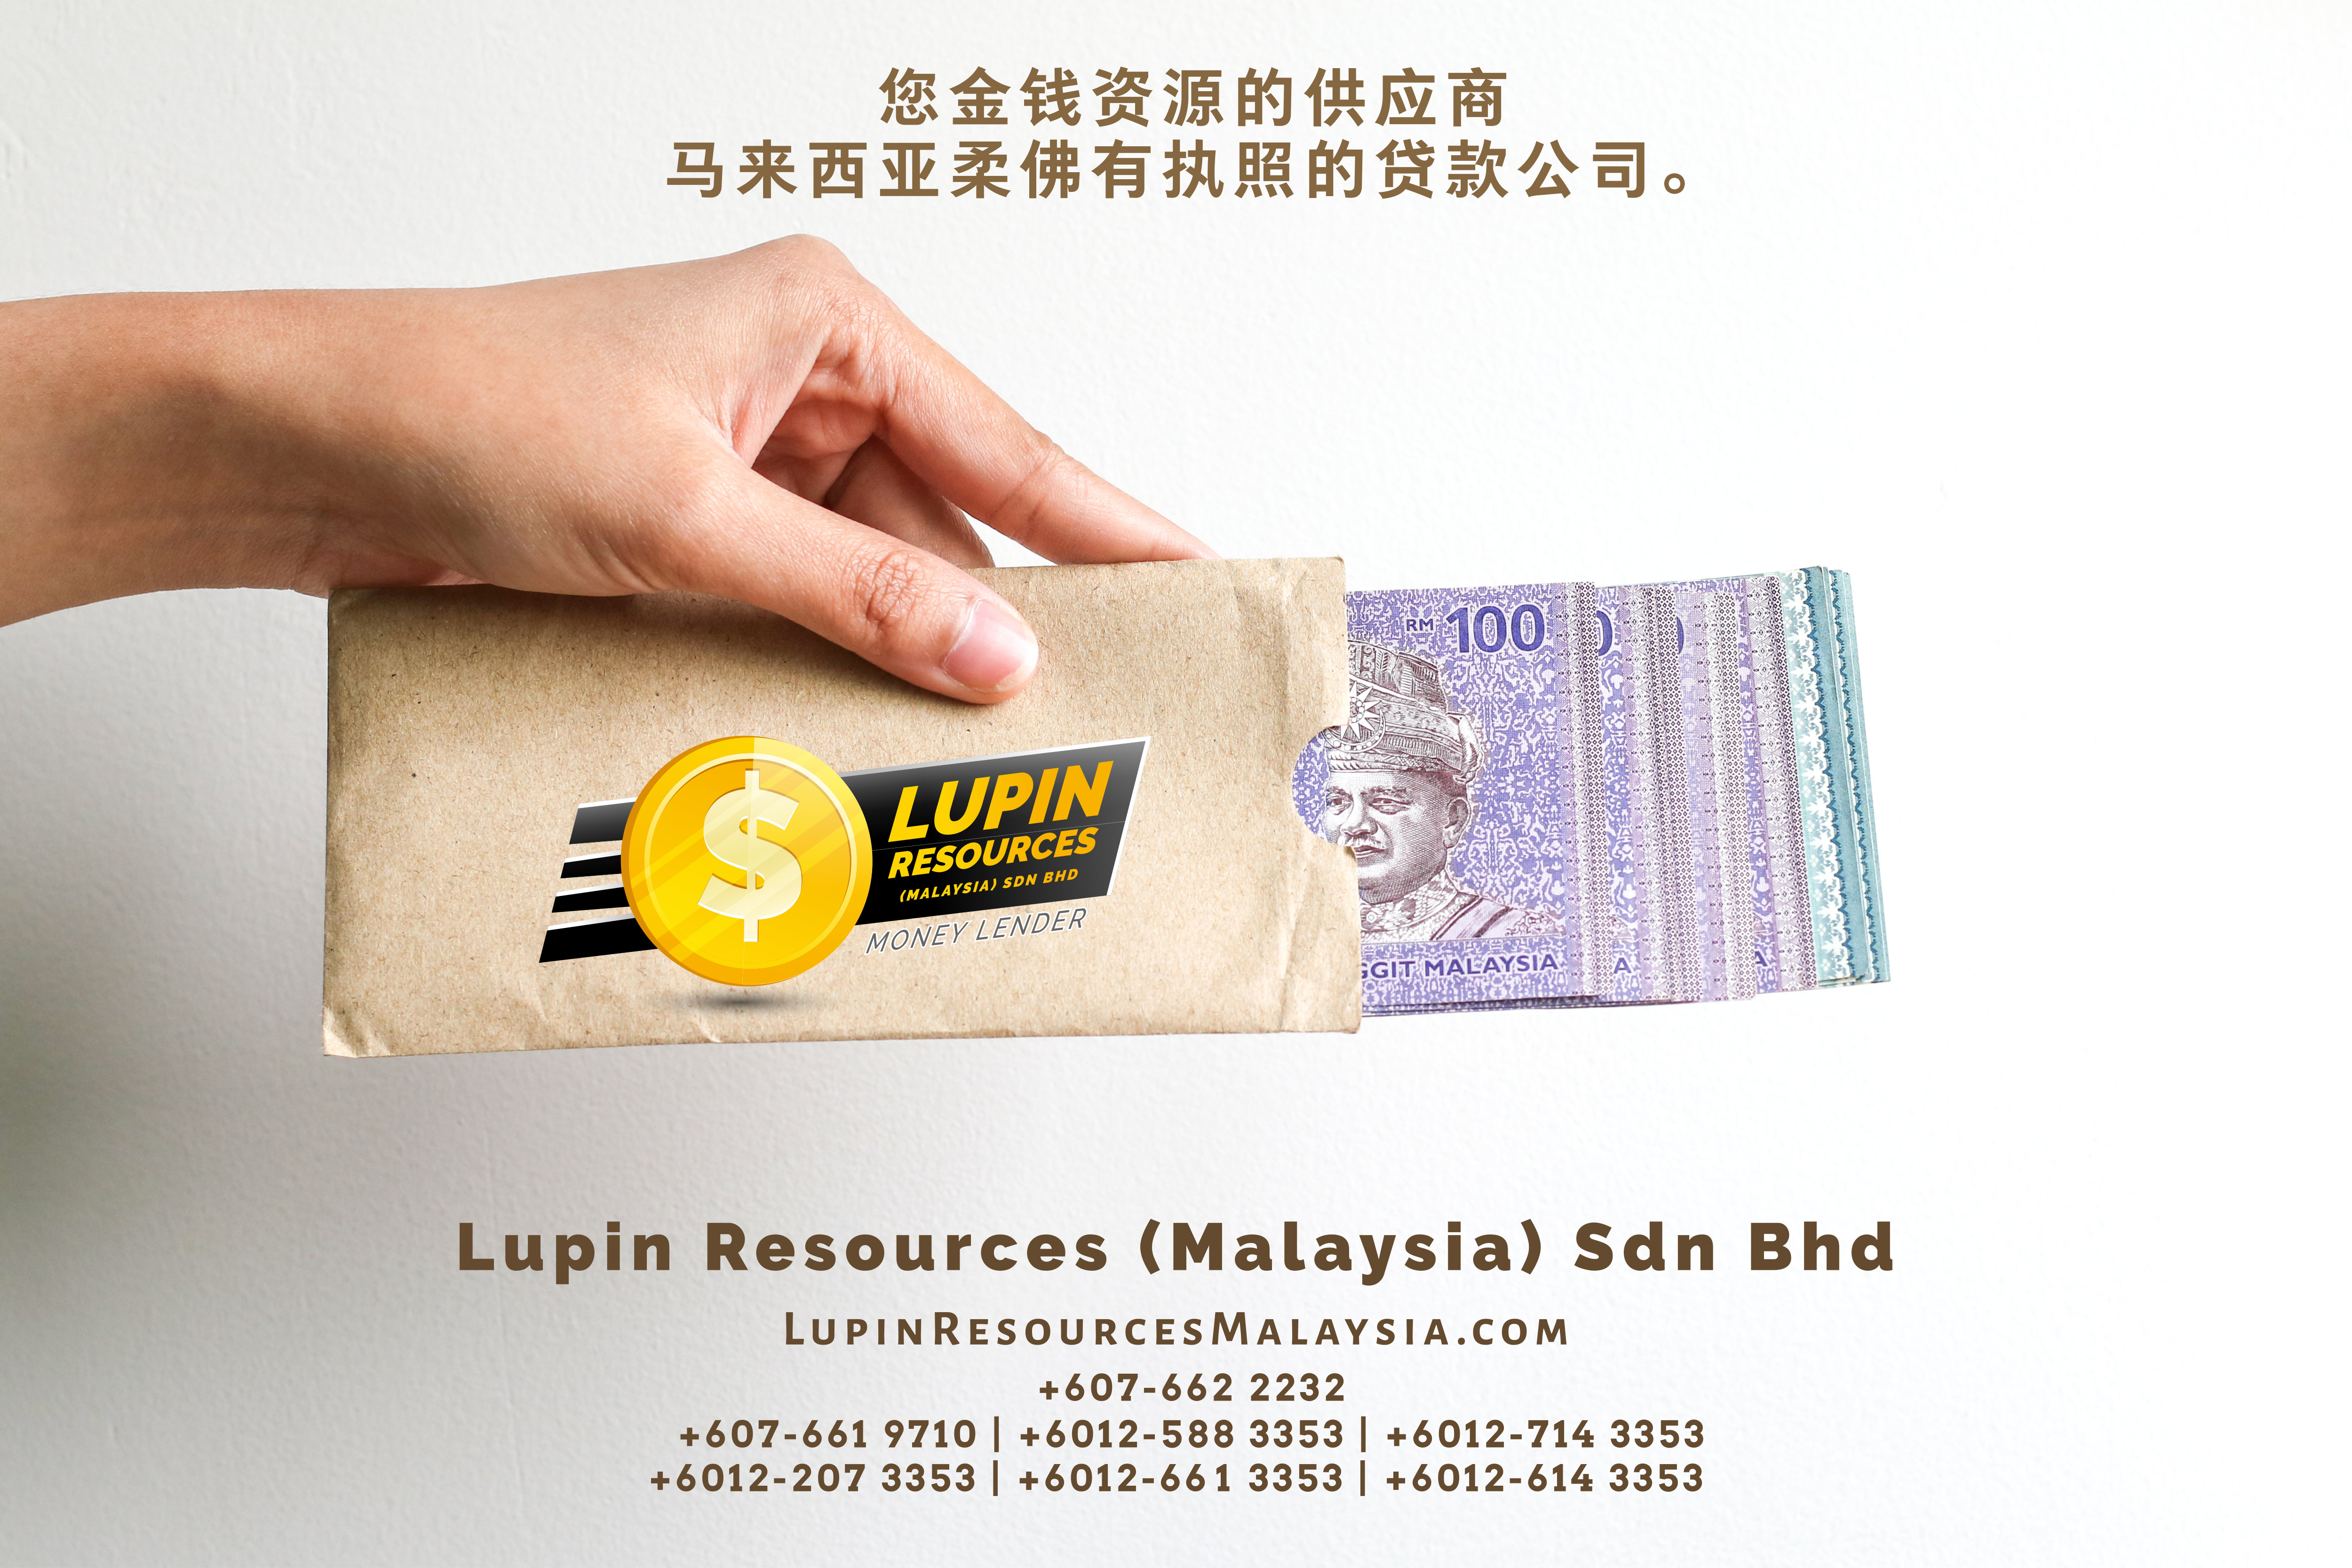 柔佛有执照的贷款公司 Lupin Resources Malaysia SDN BHD 您金钱资源的供应商 古来 柔佛 马来西亚 个人贷款 商业贷款 低利息抵押代款 经济 A01-77